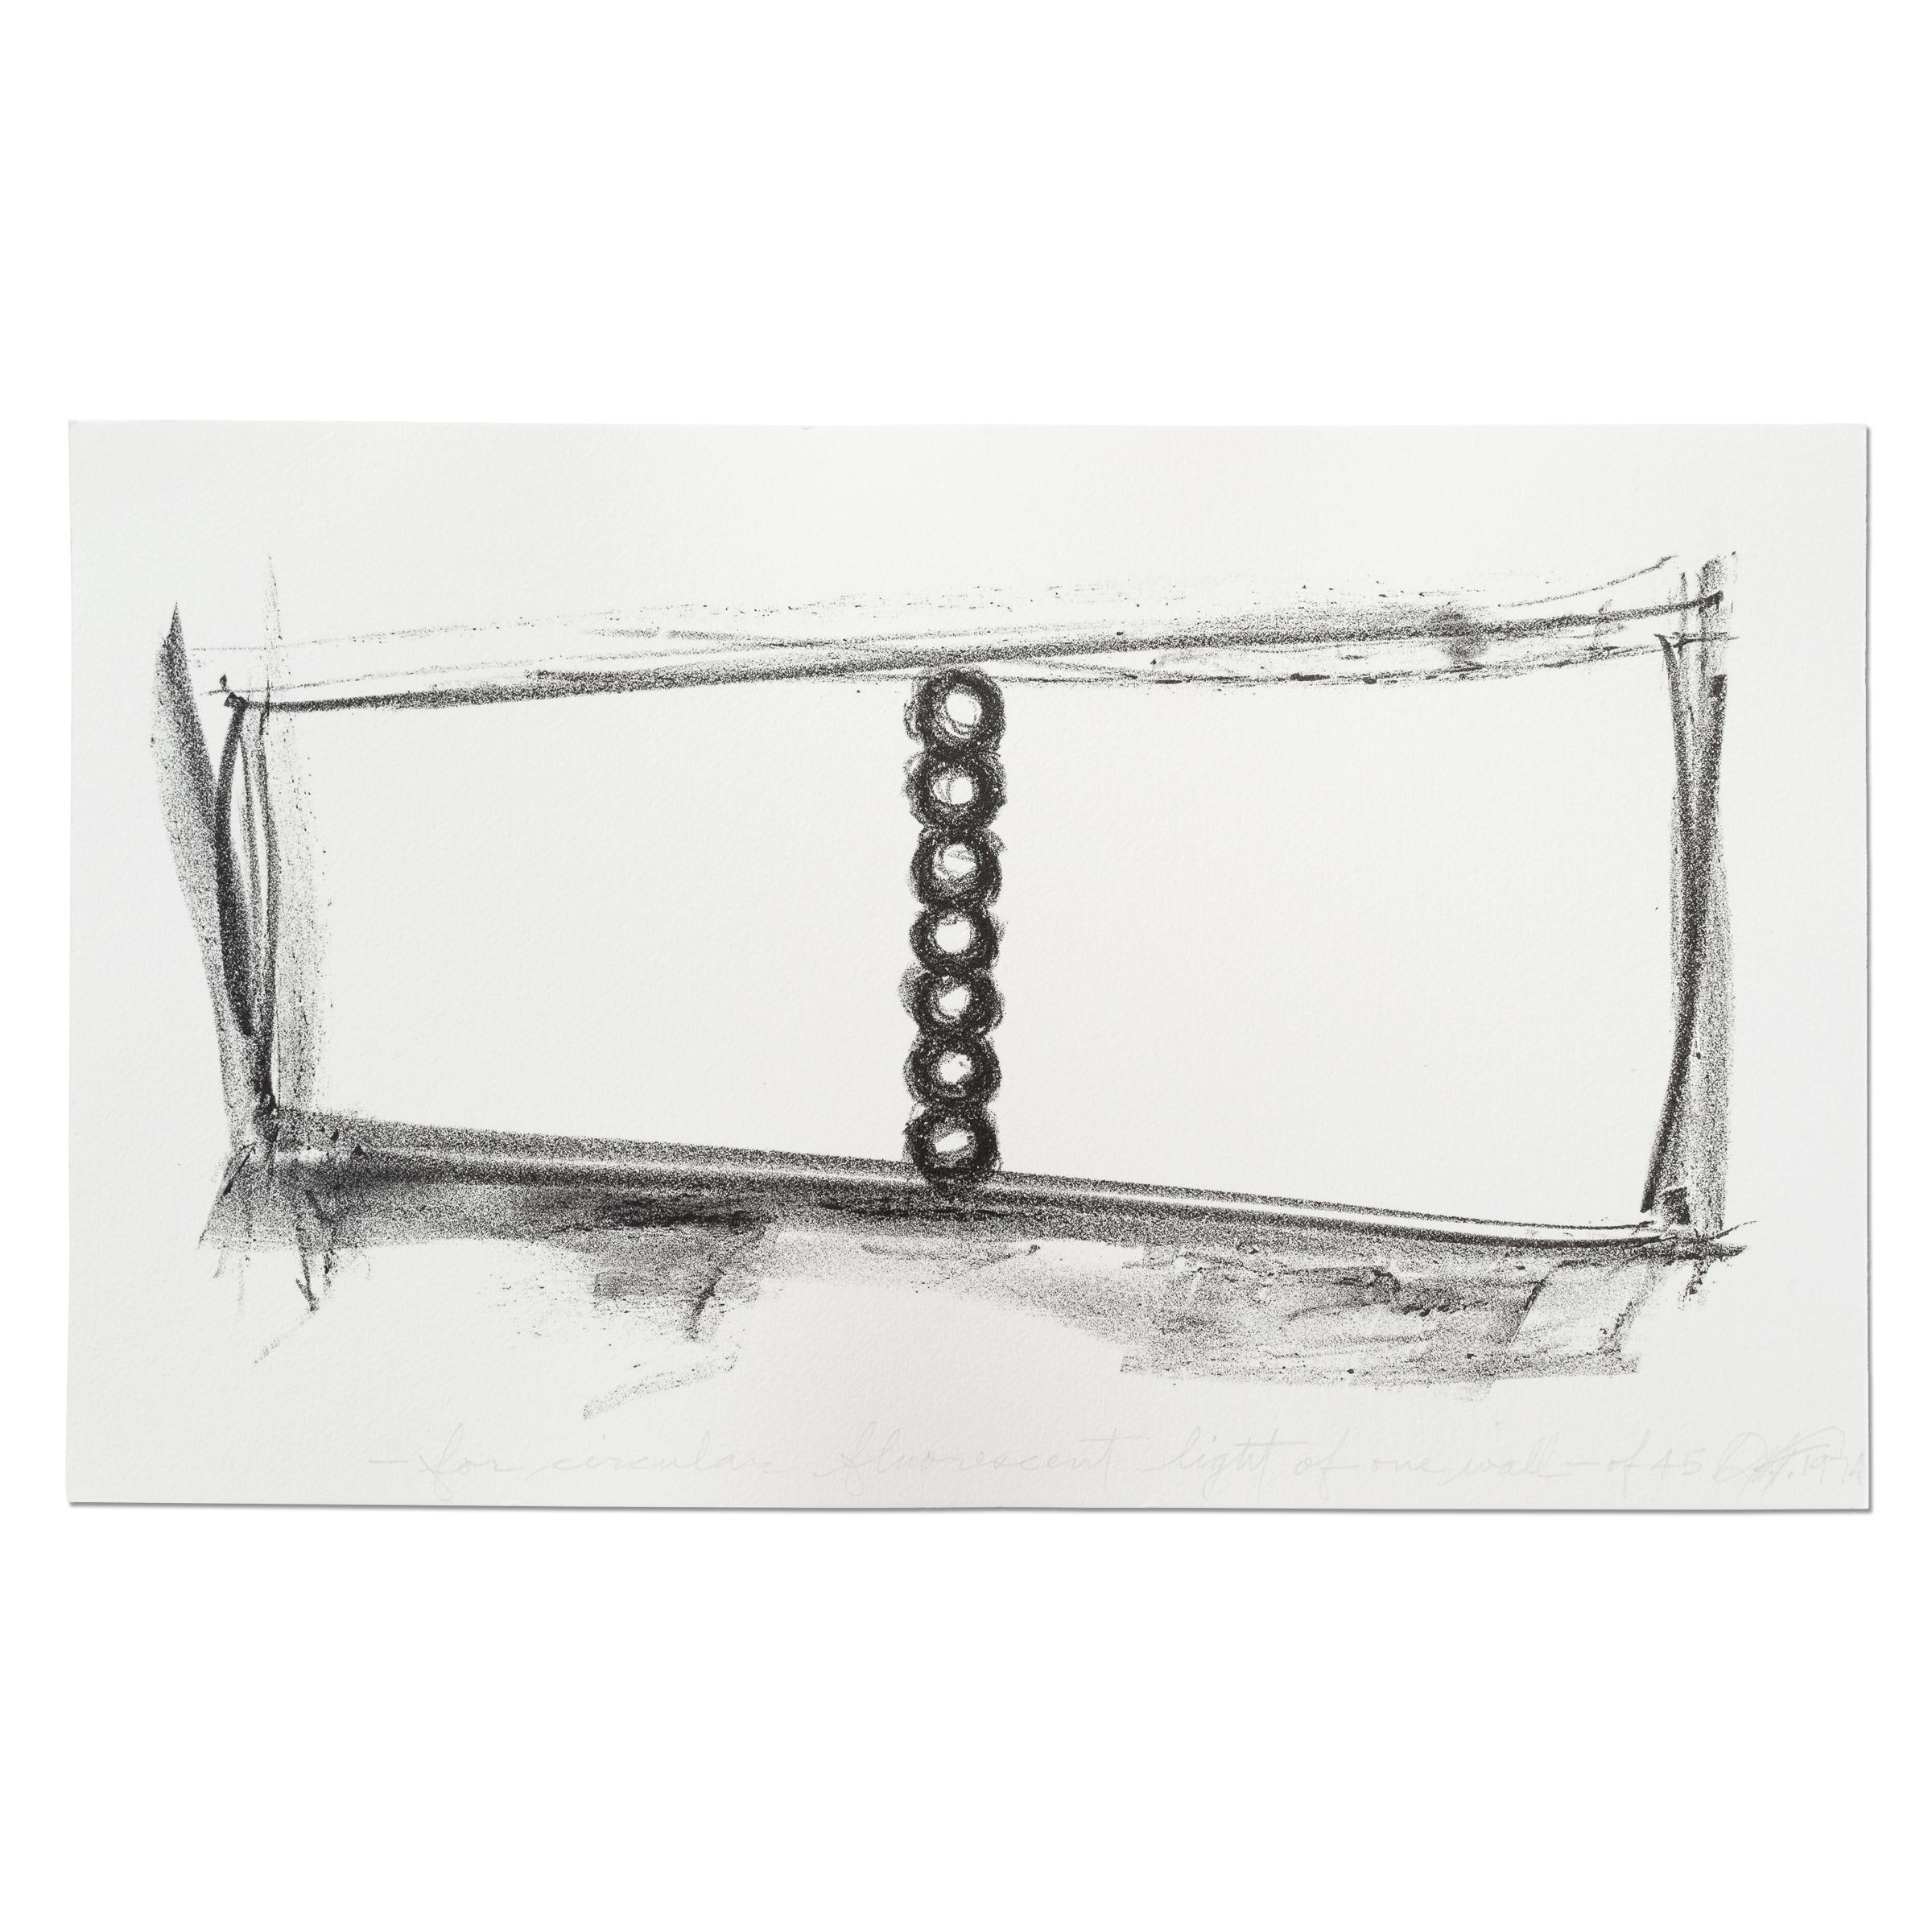 Dan Flavin (américain, 1933-1996)
Pour l'éclairage fluorescent circulaire d'un mur, 1974
Médium : Lithographie sur papier vélin
Dimensions : 18,5 x 31,5 cm : 18,5 x 31,5 cm
Édition de 45 : signée, titrée et datée à la main
Éditeur : Galerie Heiner